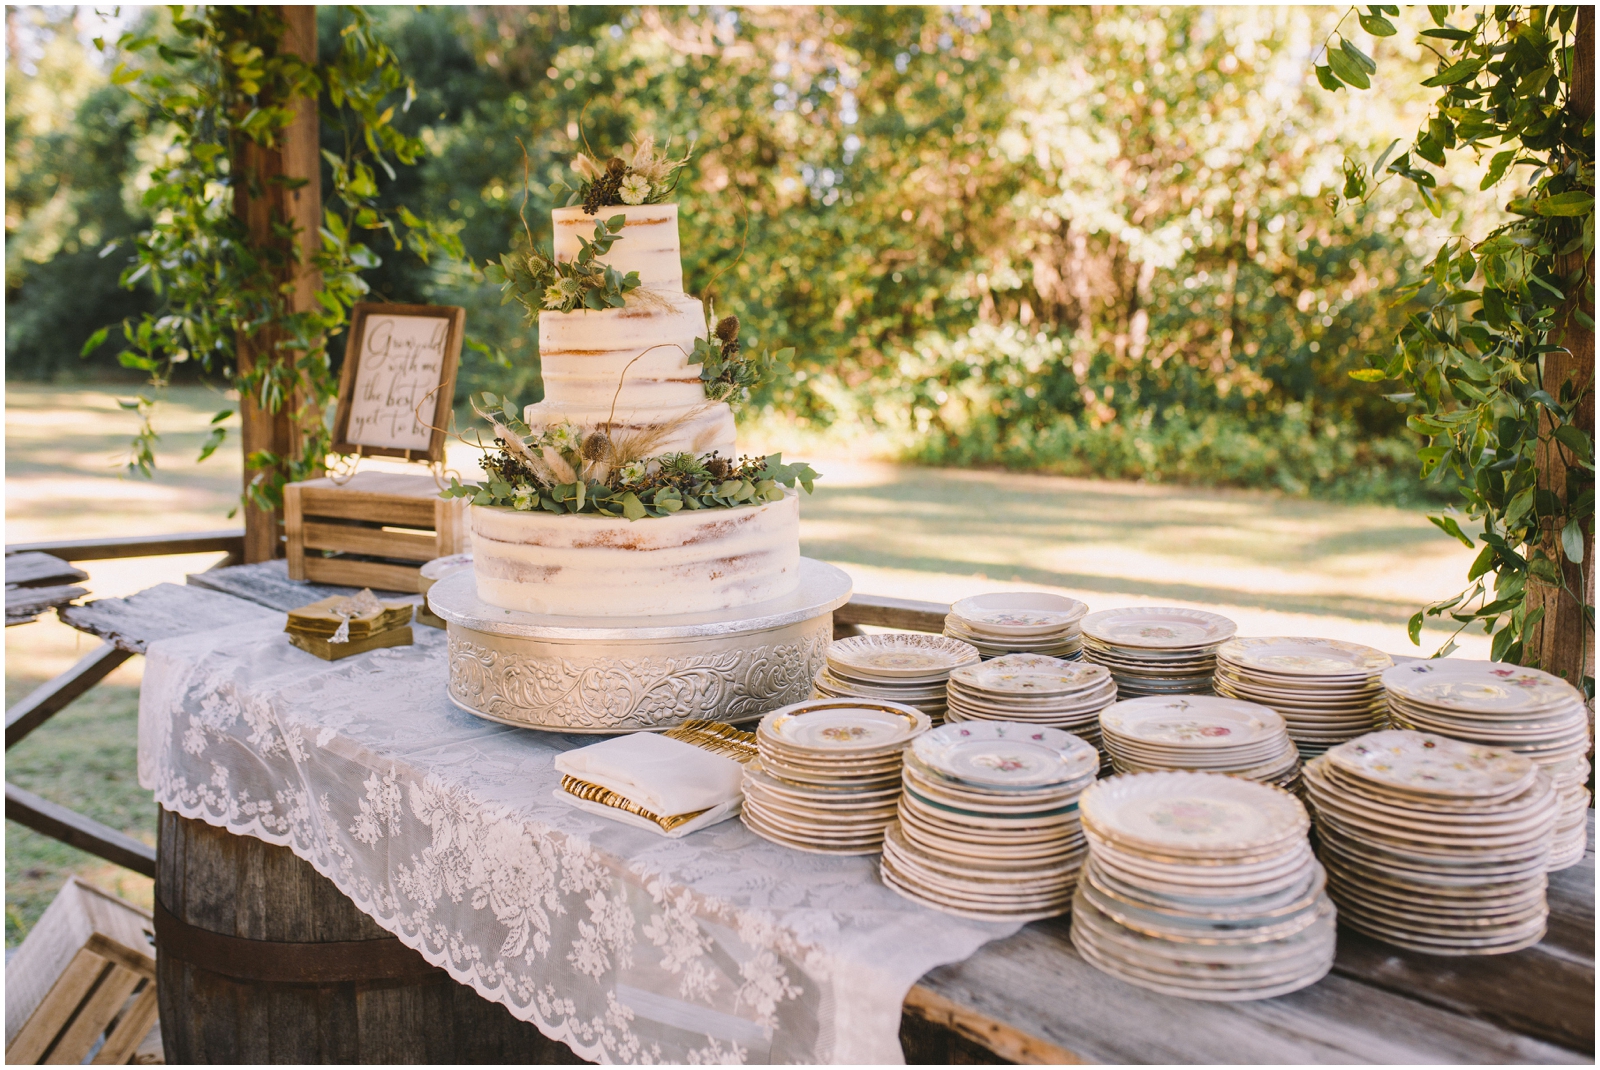  Wedding Cake Table Display 